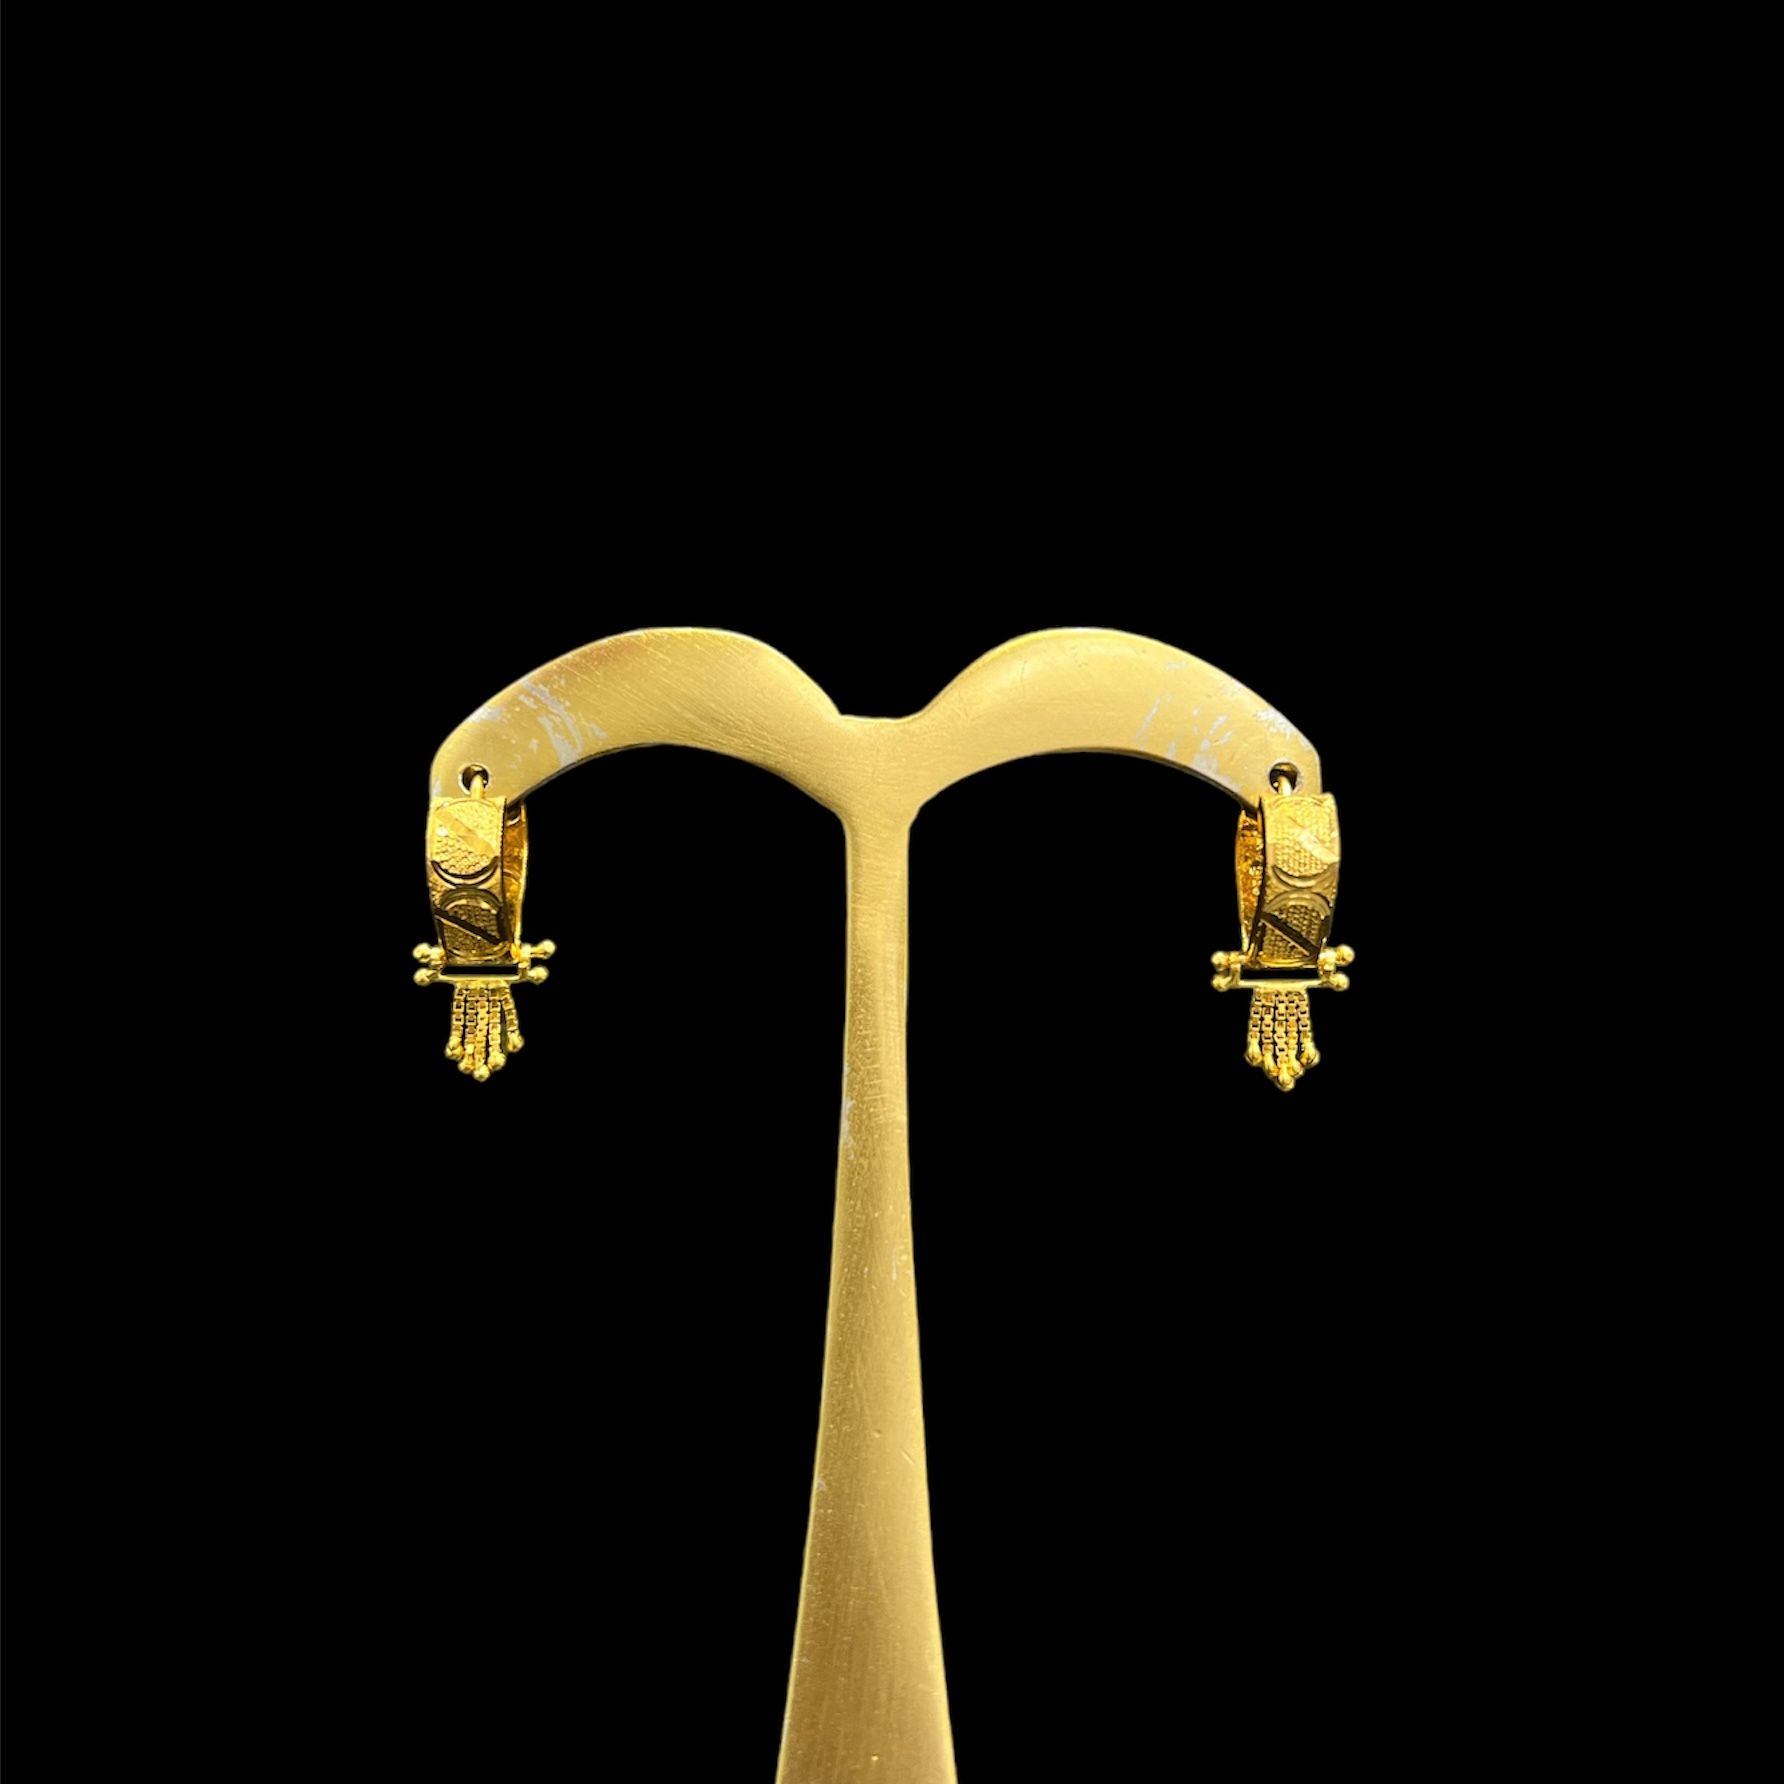 22K Gold Hoop Earrings (Ear Bali) For Women - 235-GER15019 in 4.250 Grams